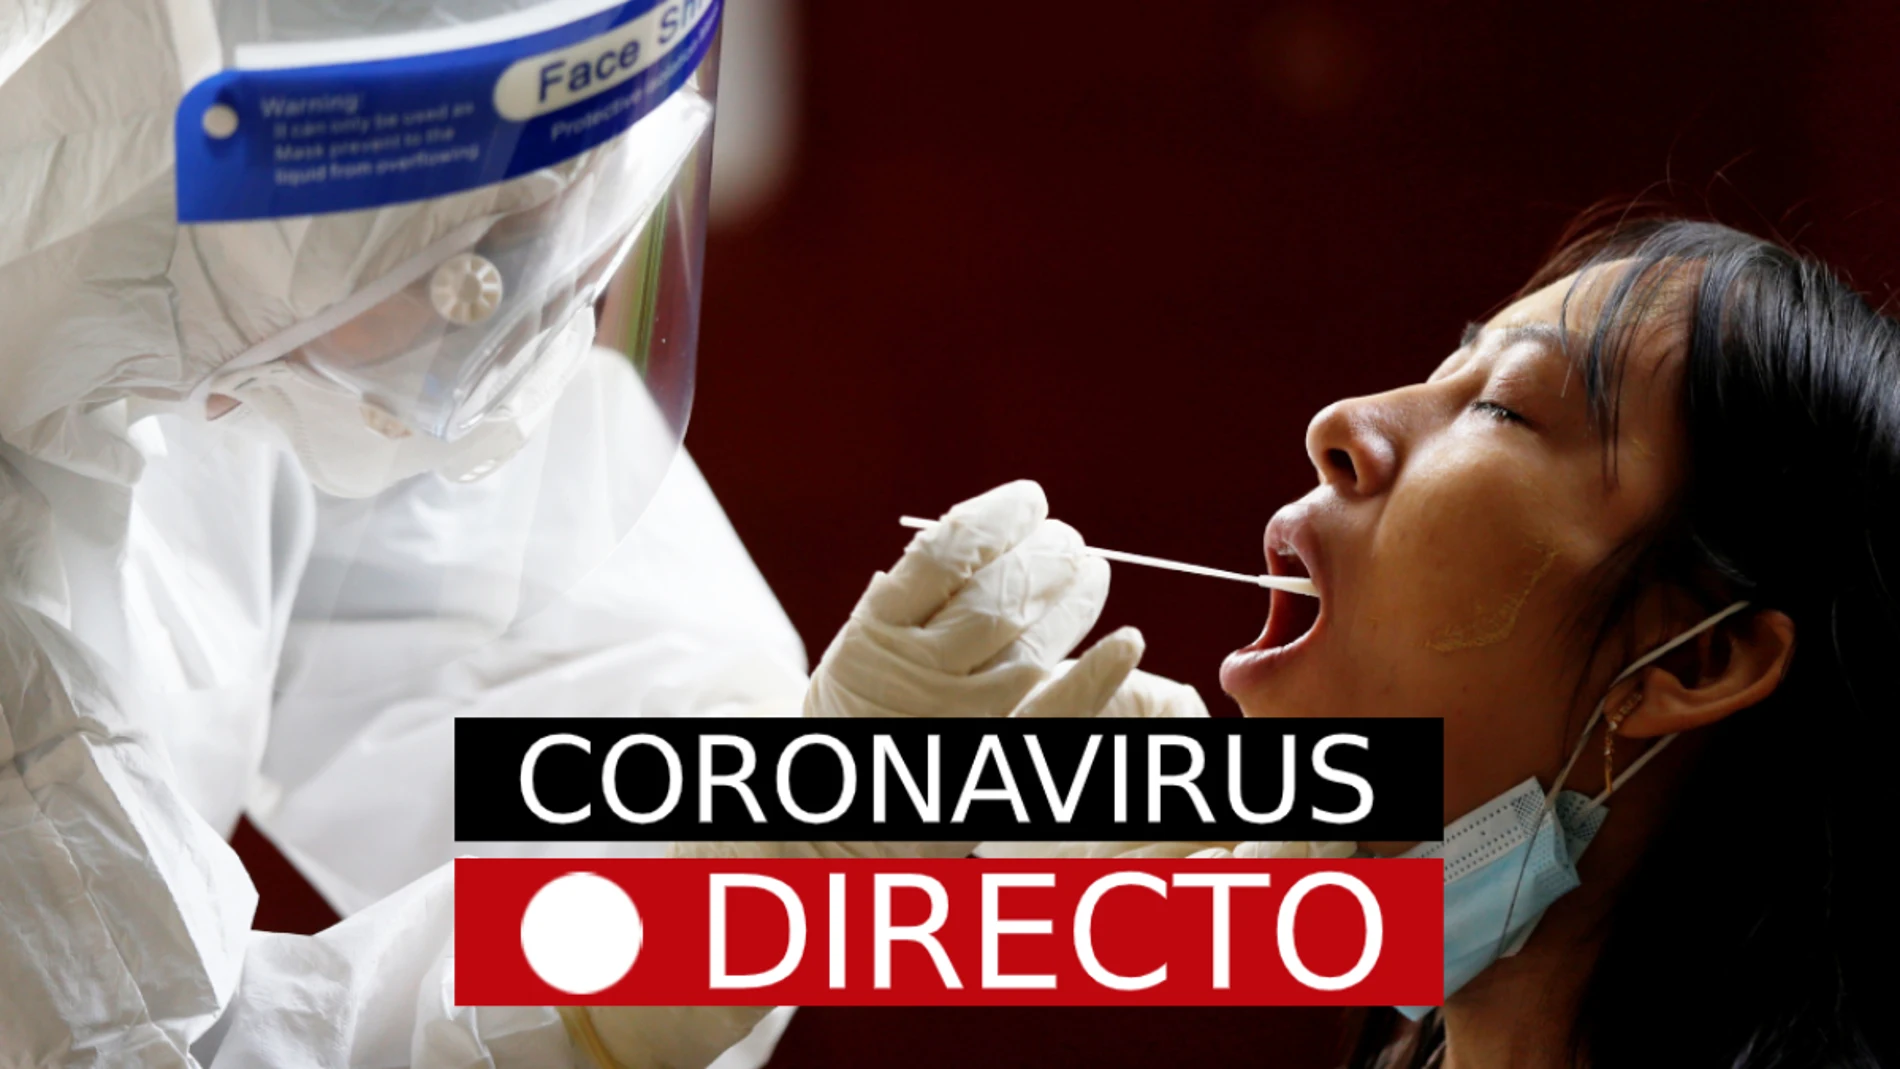 Coronavirus en Madrid y España, hoy: Noticias, confinamiento, restricciones y última hora del COVID-19, en directo